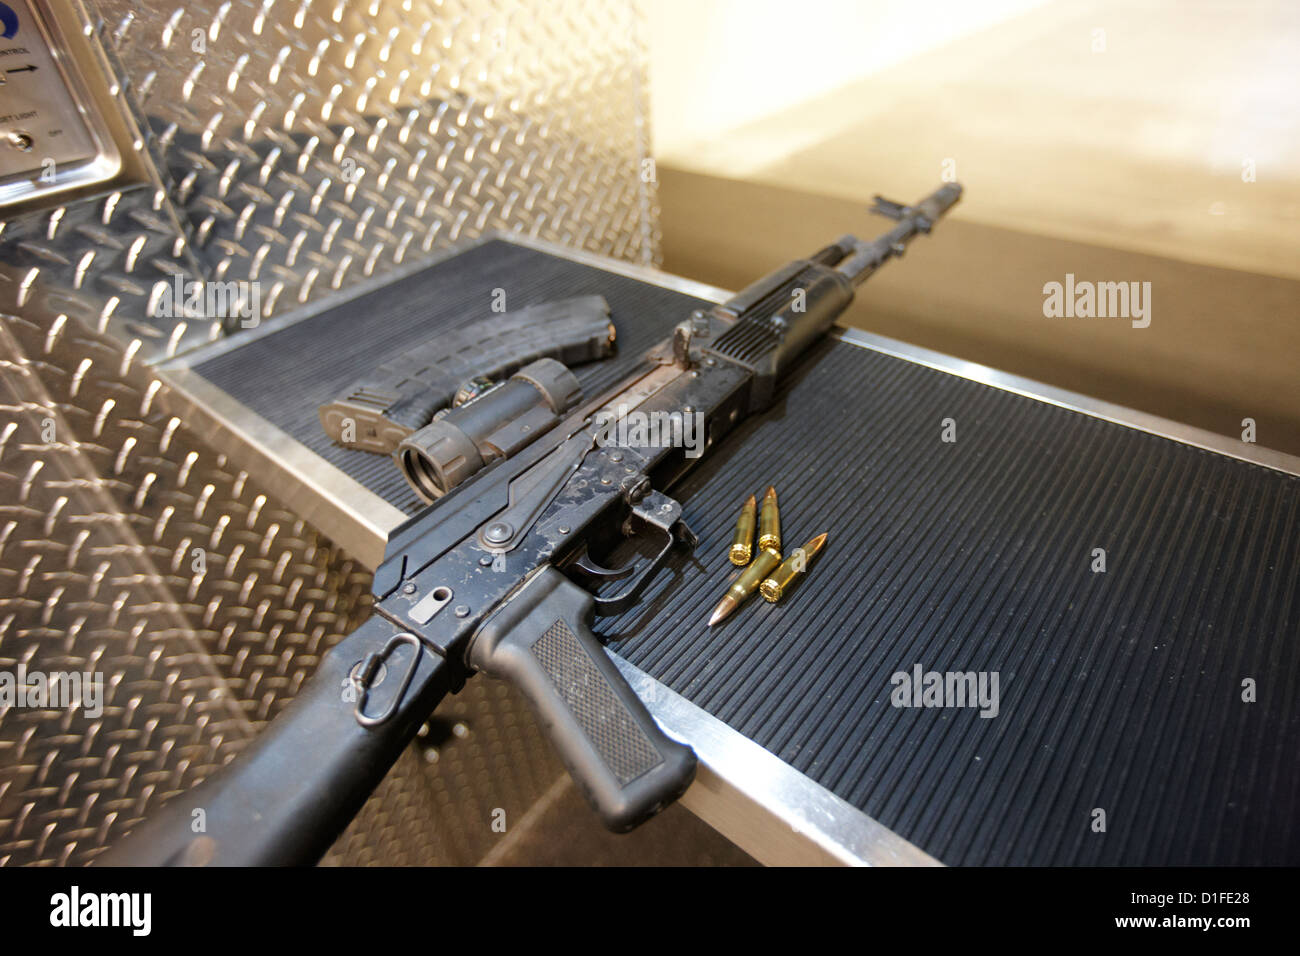 AK47 fucile da assalto magazine e munizioni a una gamma di pistola a las vegas nevada usa Foto Stock